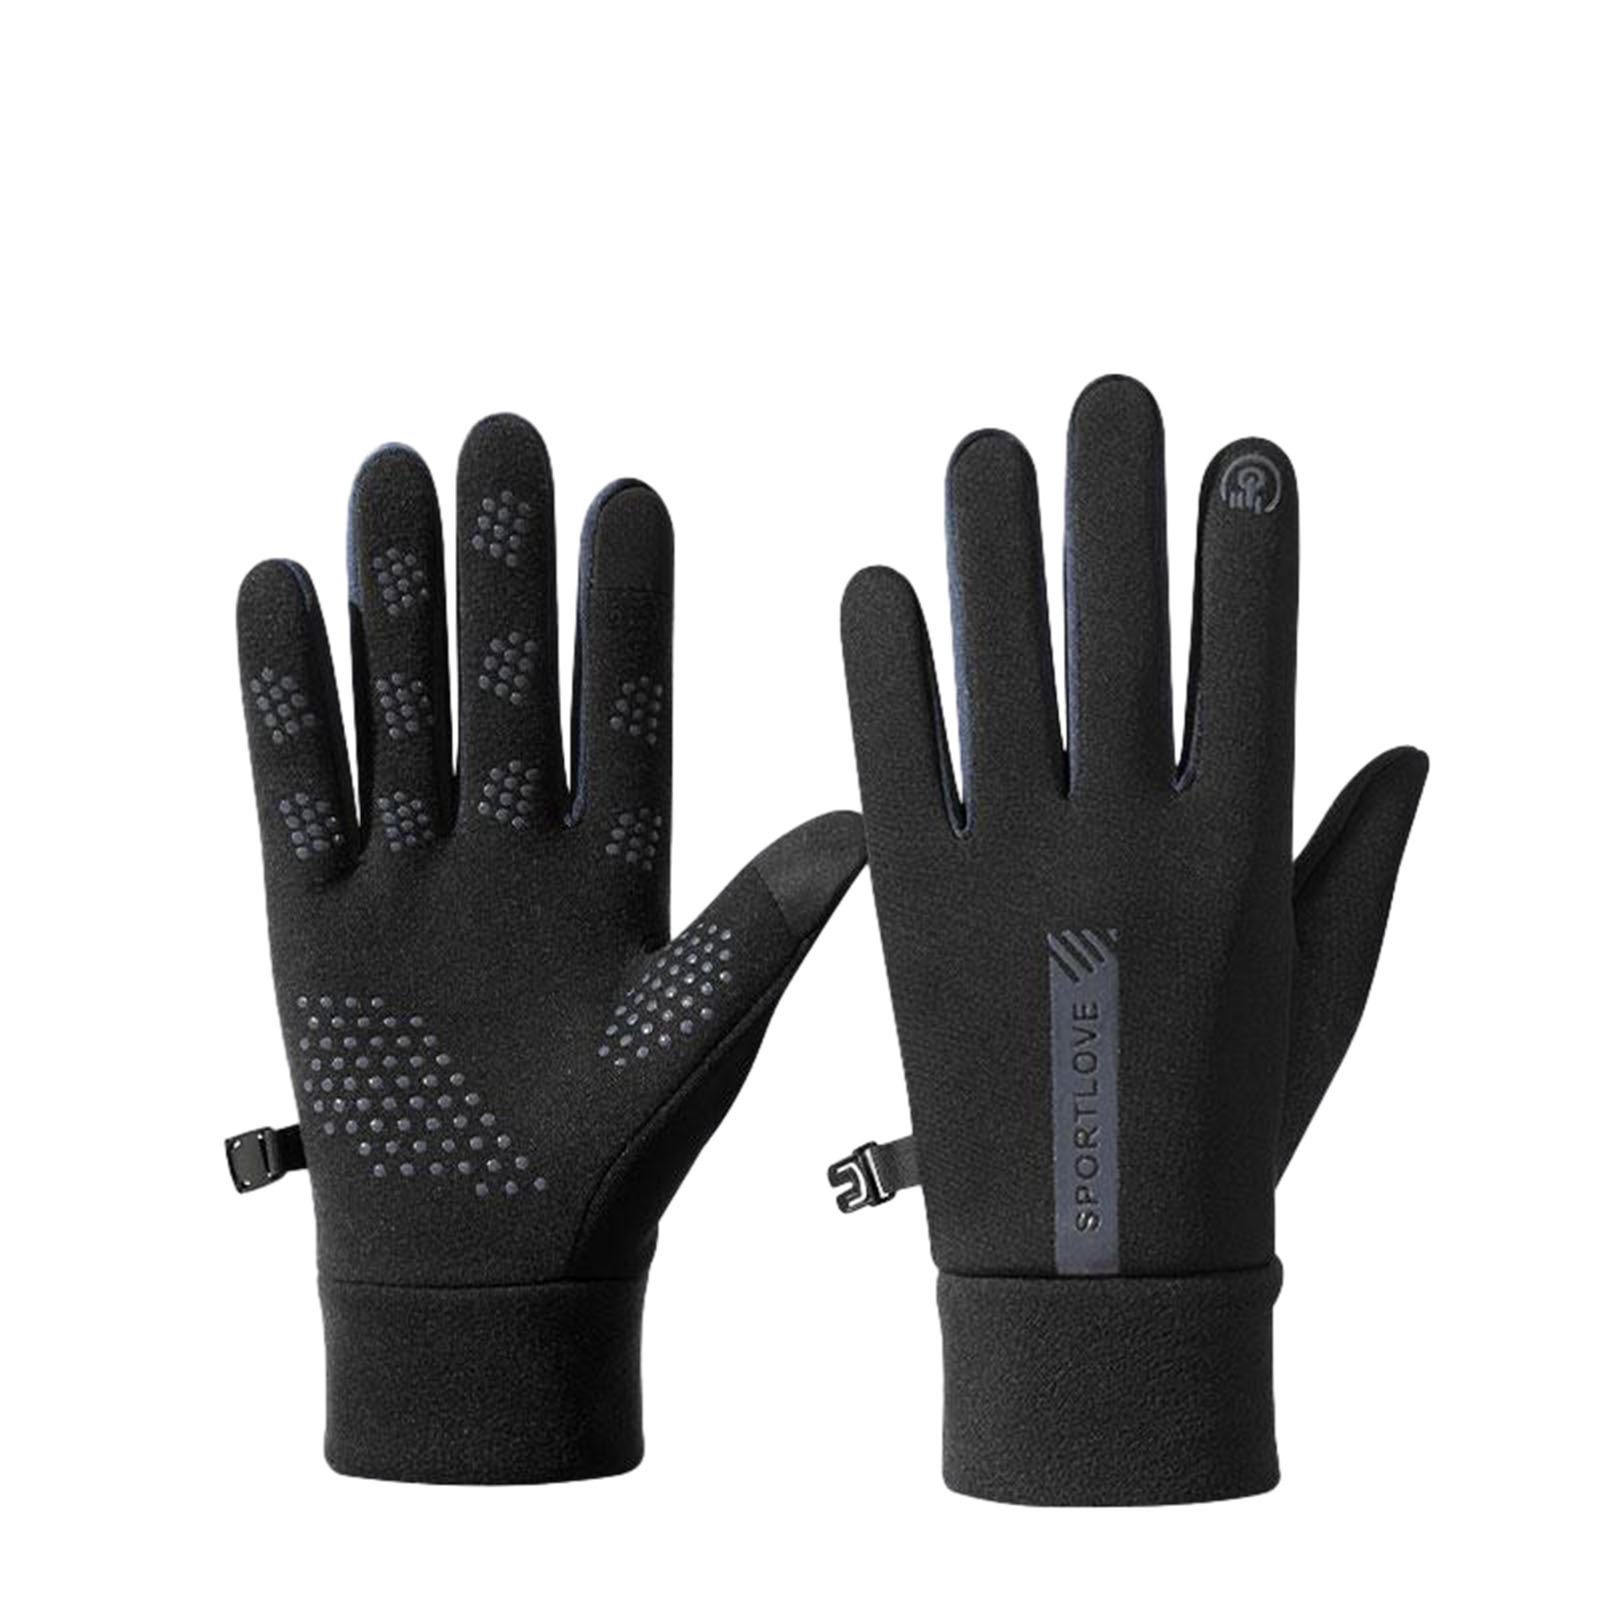 Blusmart Fahrradhandschuhe Touchscreen-Wärmehandschuhe black and gray